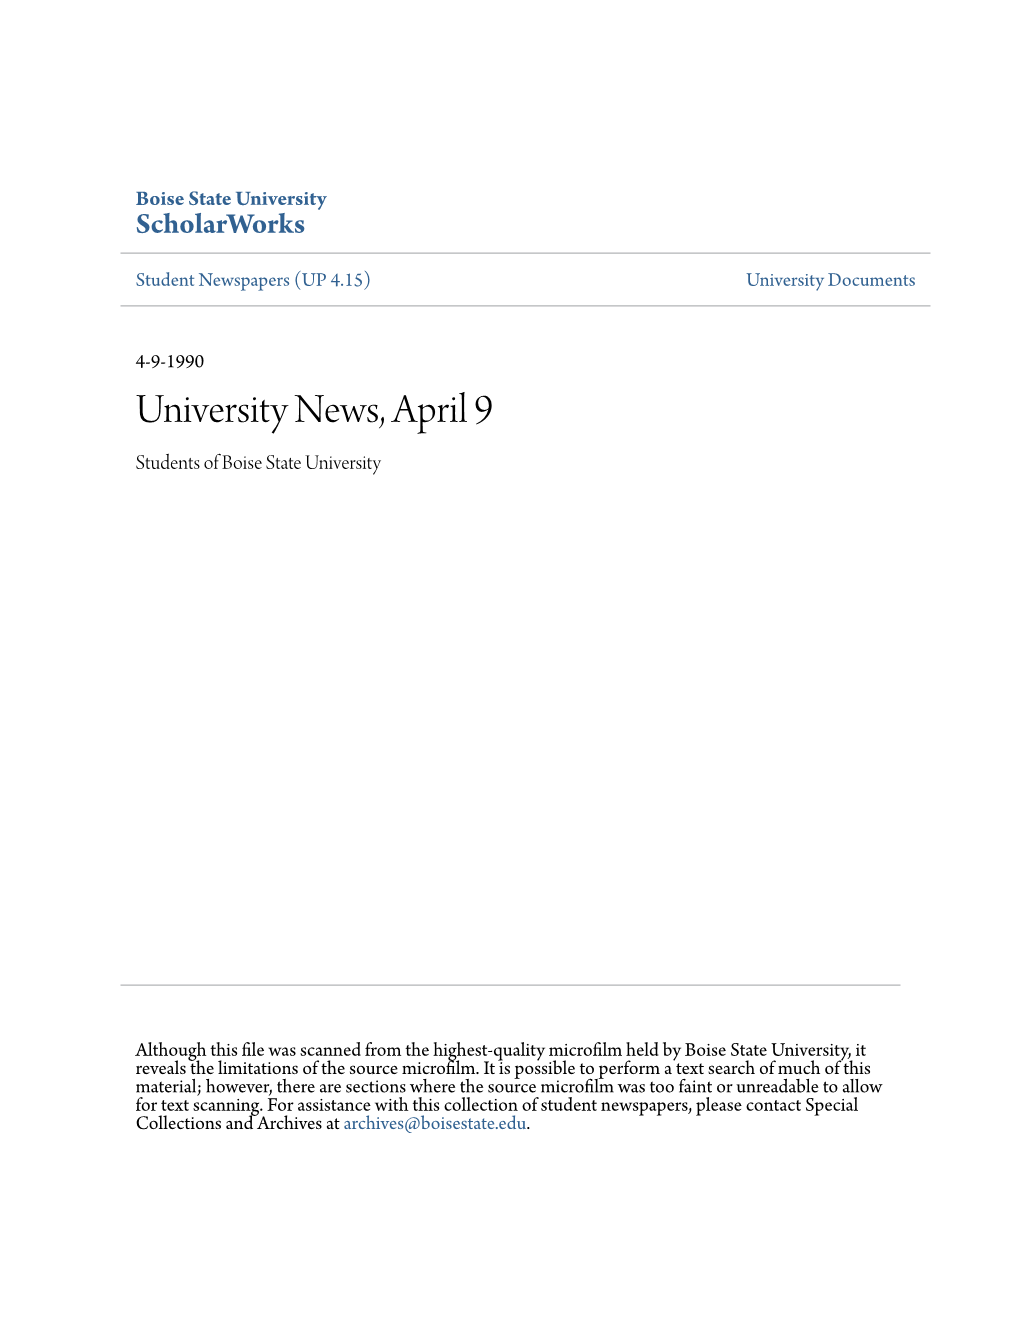 University News, April 9 Students of Boise State University